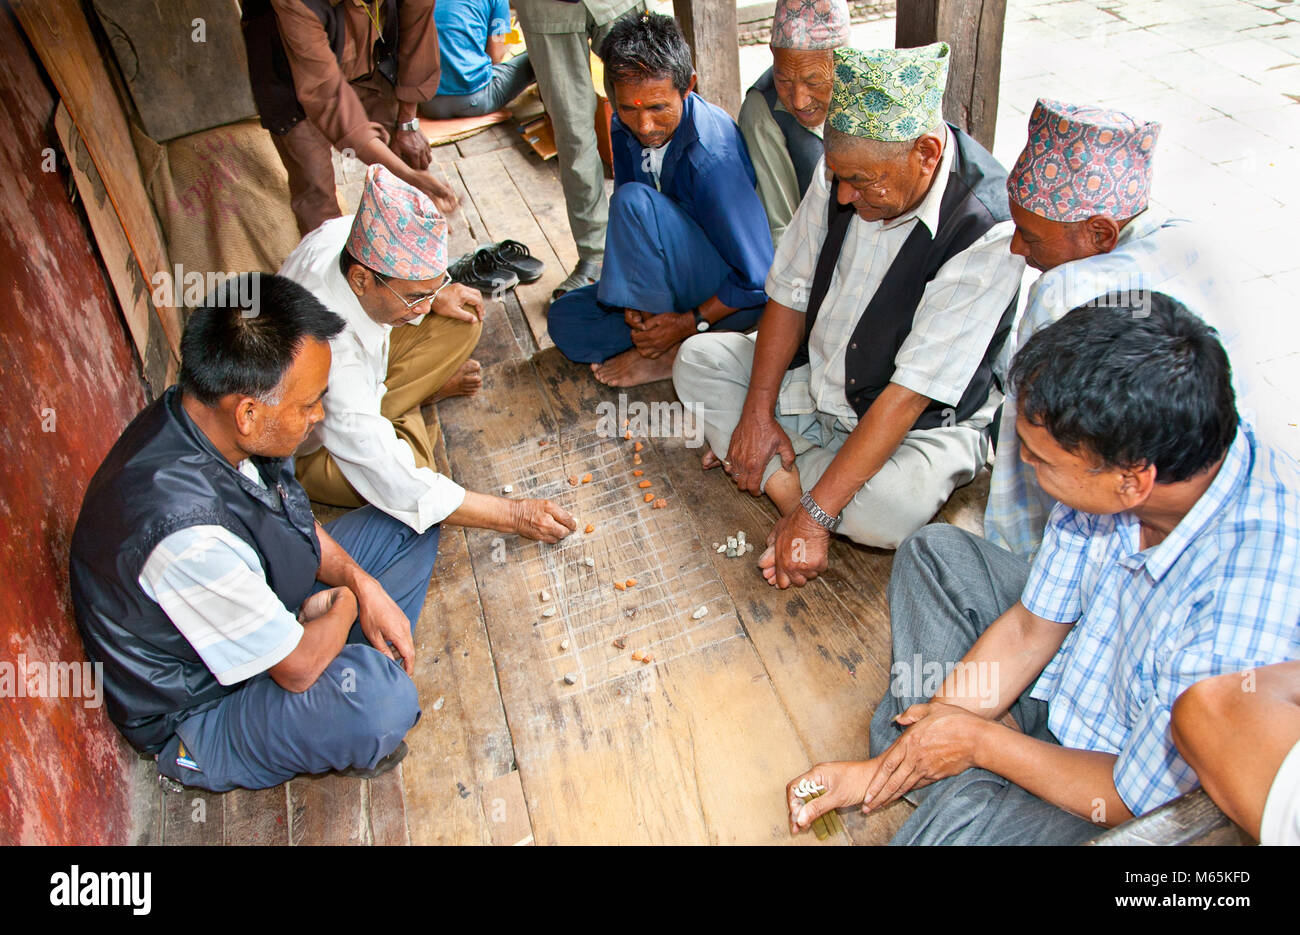 BHAKTAPUR - Mai 20: Unbekannter Männer spielen traditionelle Spiel auf. 20, 2013 in Bhaktapur, Nepal. Spiele mit Bambus Stick und Rock haben in gespielt worden Stockfoto